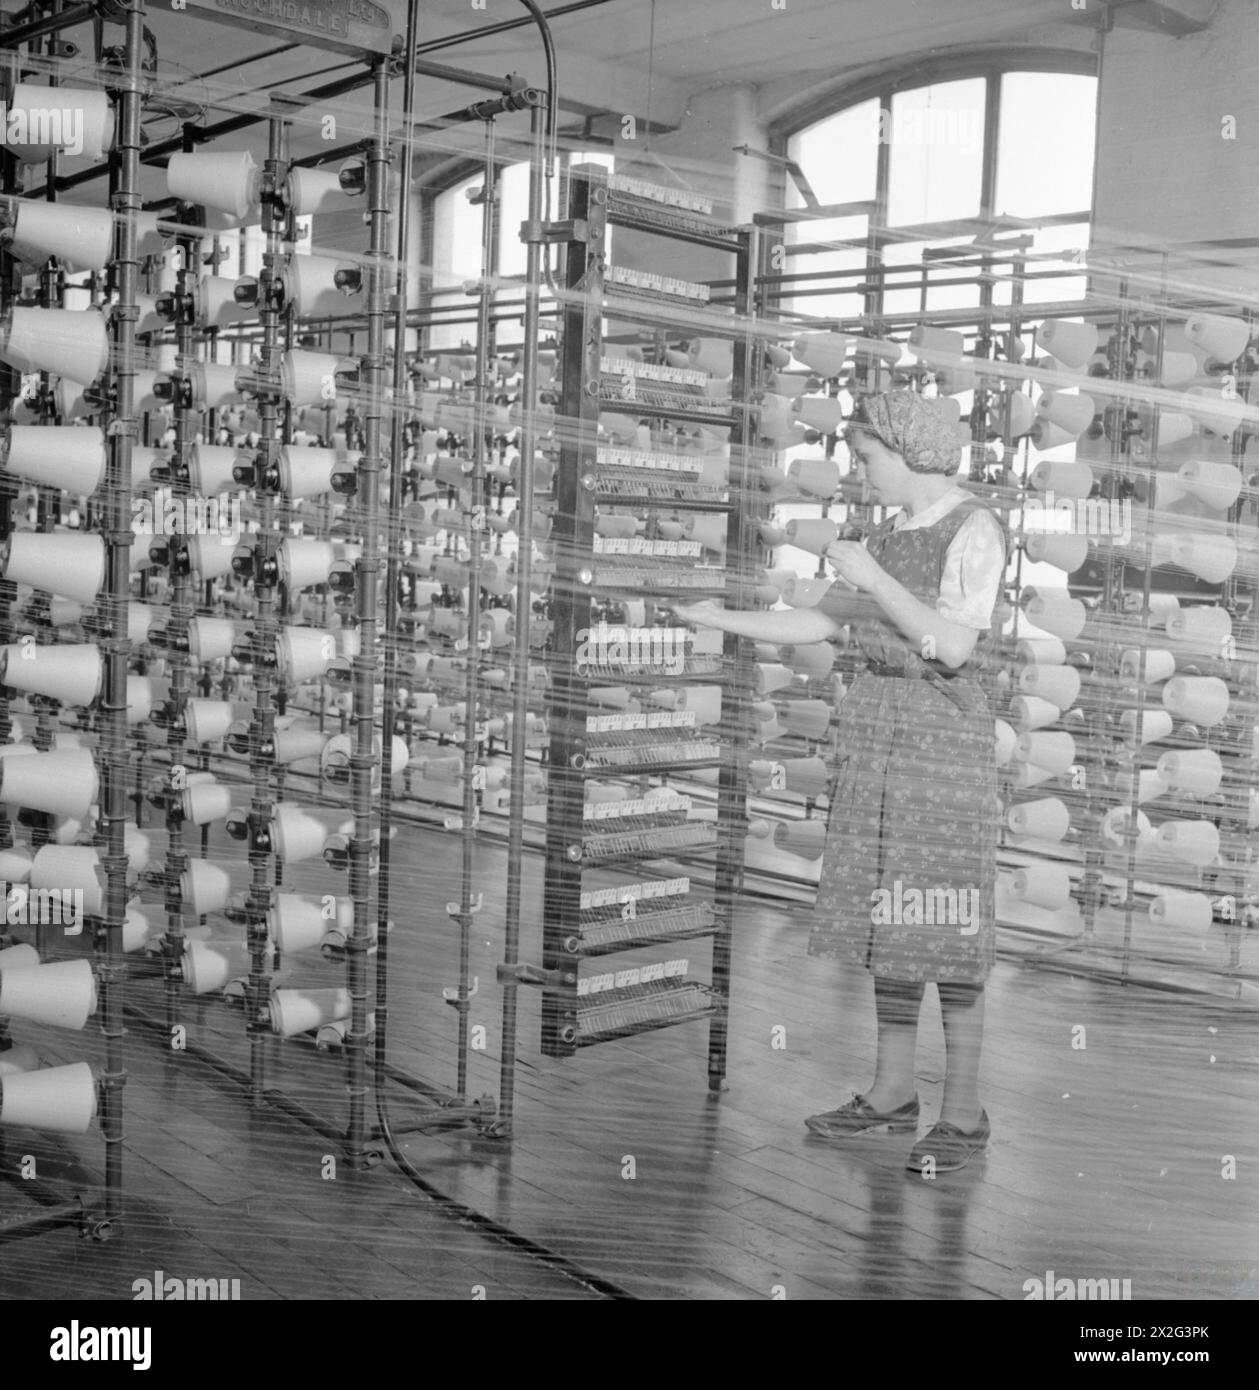 DIE BRITISCHE BAUMWOLLINDUSTRIE: ALLTAG IN Einer BRITISCHEN BAUMWOLLFABRIK, LANCASHIRE, ENGLAND, Großbritannien, 1945 – Hilda Mackenzie arbeitet als Ballwarper in einer Baumwollfabrik irgendwo in Lancashire. Ihre Aufgabe ist es, die feinen Fäden auf einen kreisförmigen Holzbalken aufzuwickeln. Dieses Foto wurde durch das feine Fadengewebe aufgenommen. Reihen und Reihen von Fadenrollen sind deutlich zu sehen Stockfoto